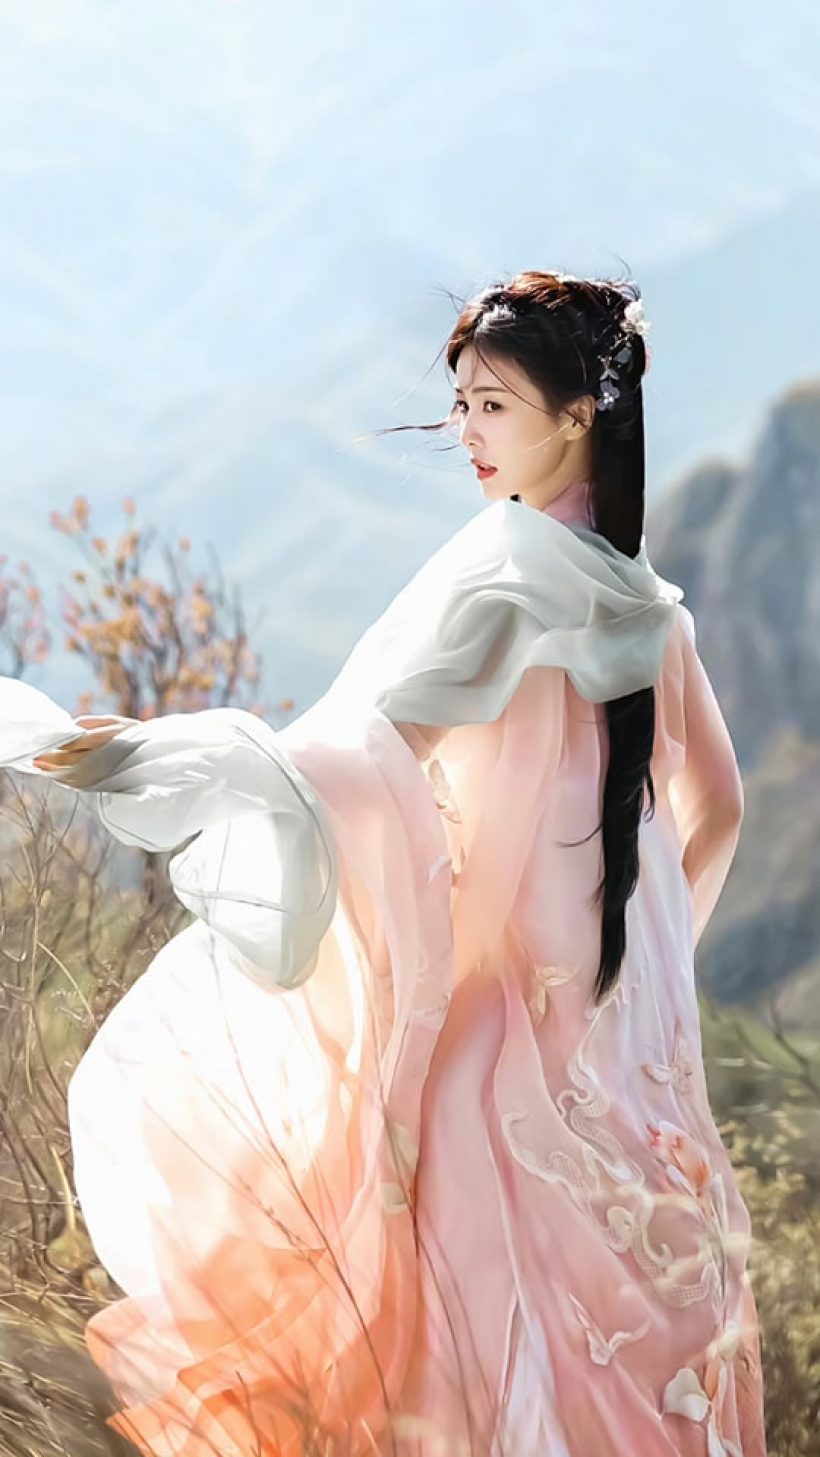 ชมความสวย! ไป๋ลู่ ในชุดจีนโบราณสวยหวานใจละลายทั้งเอเชีย